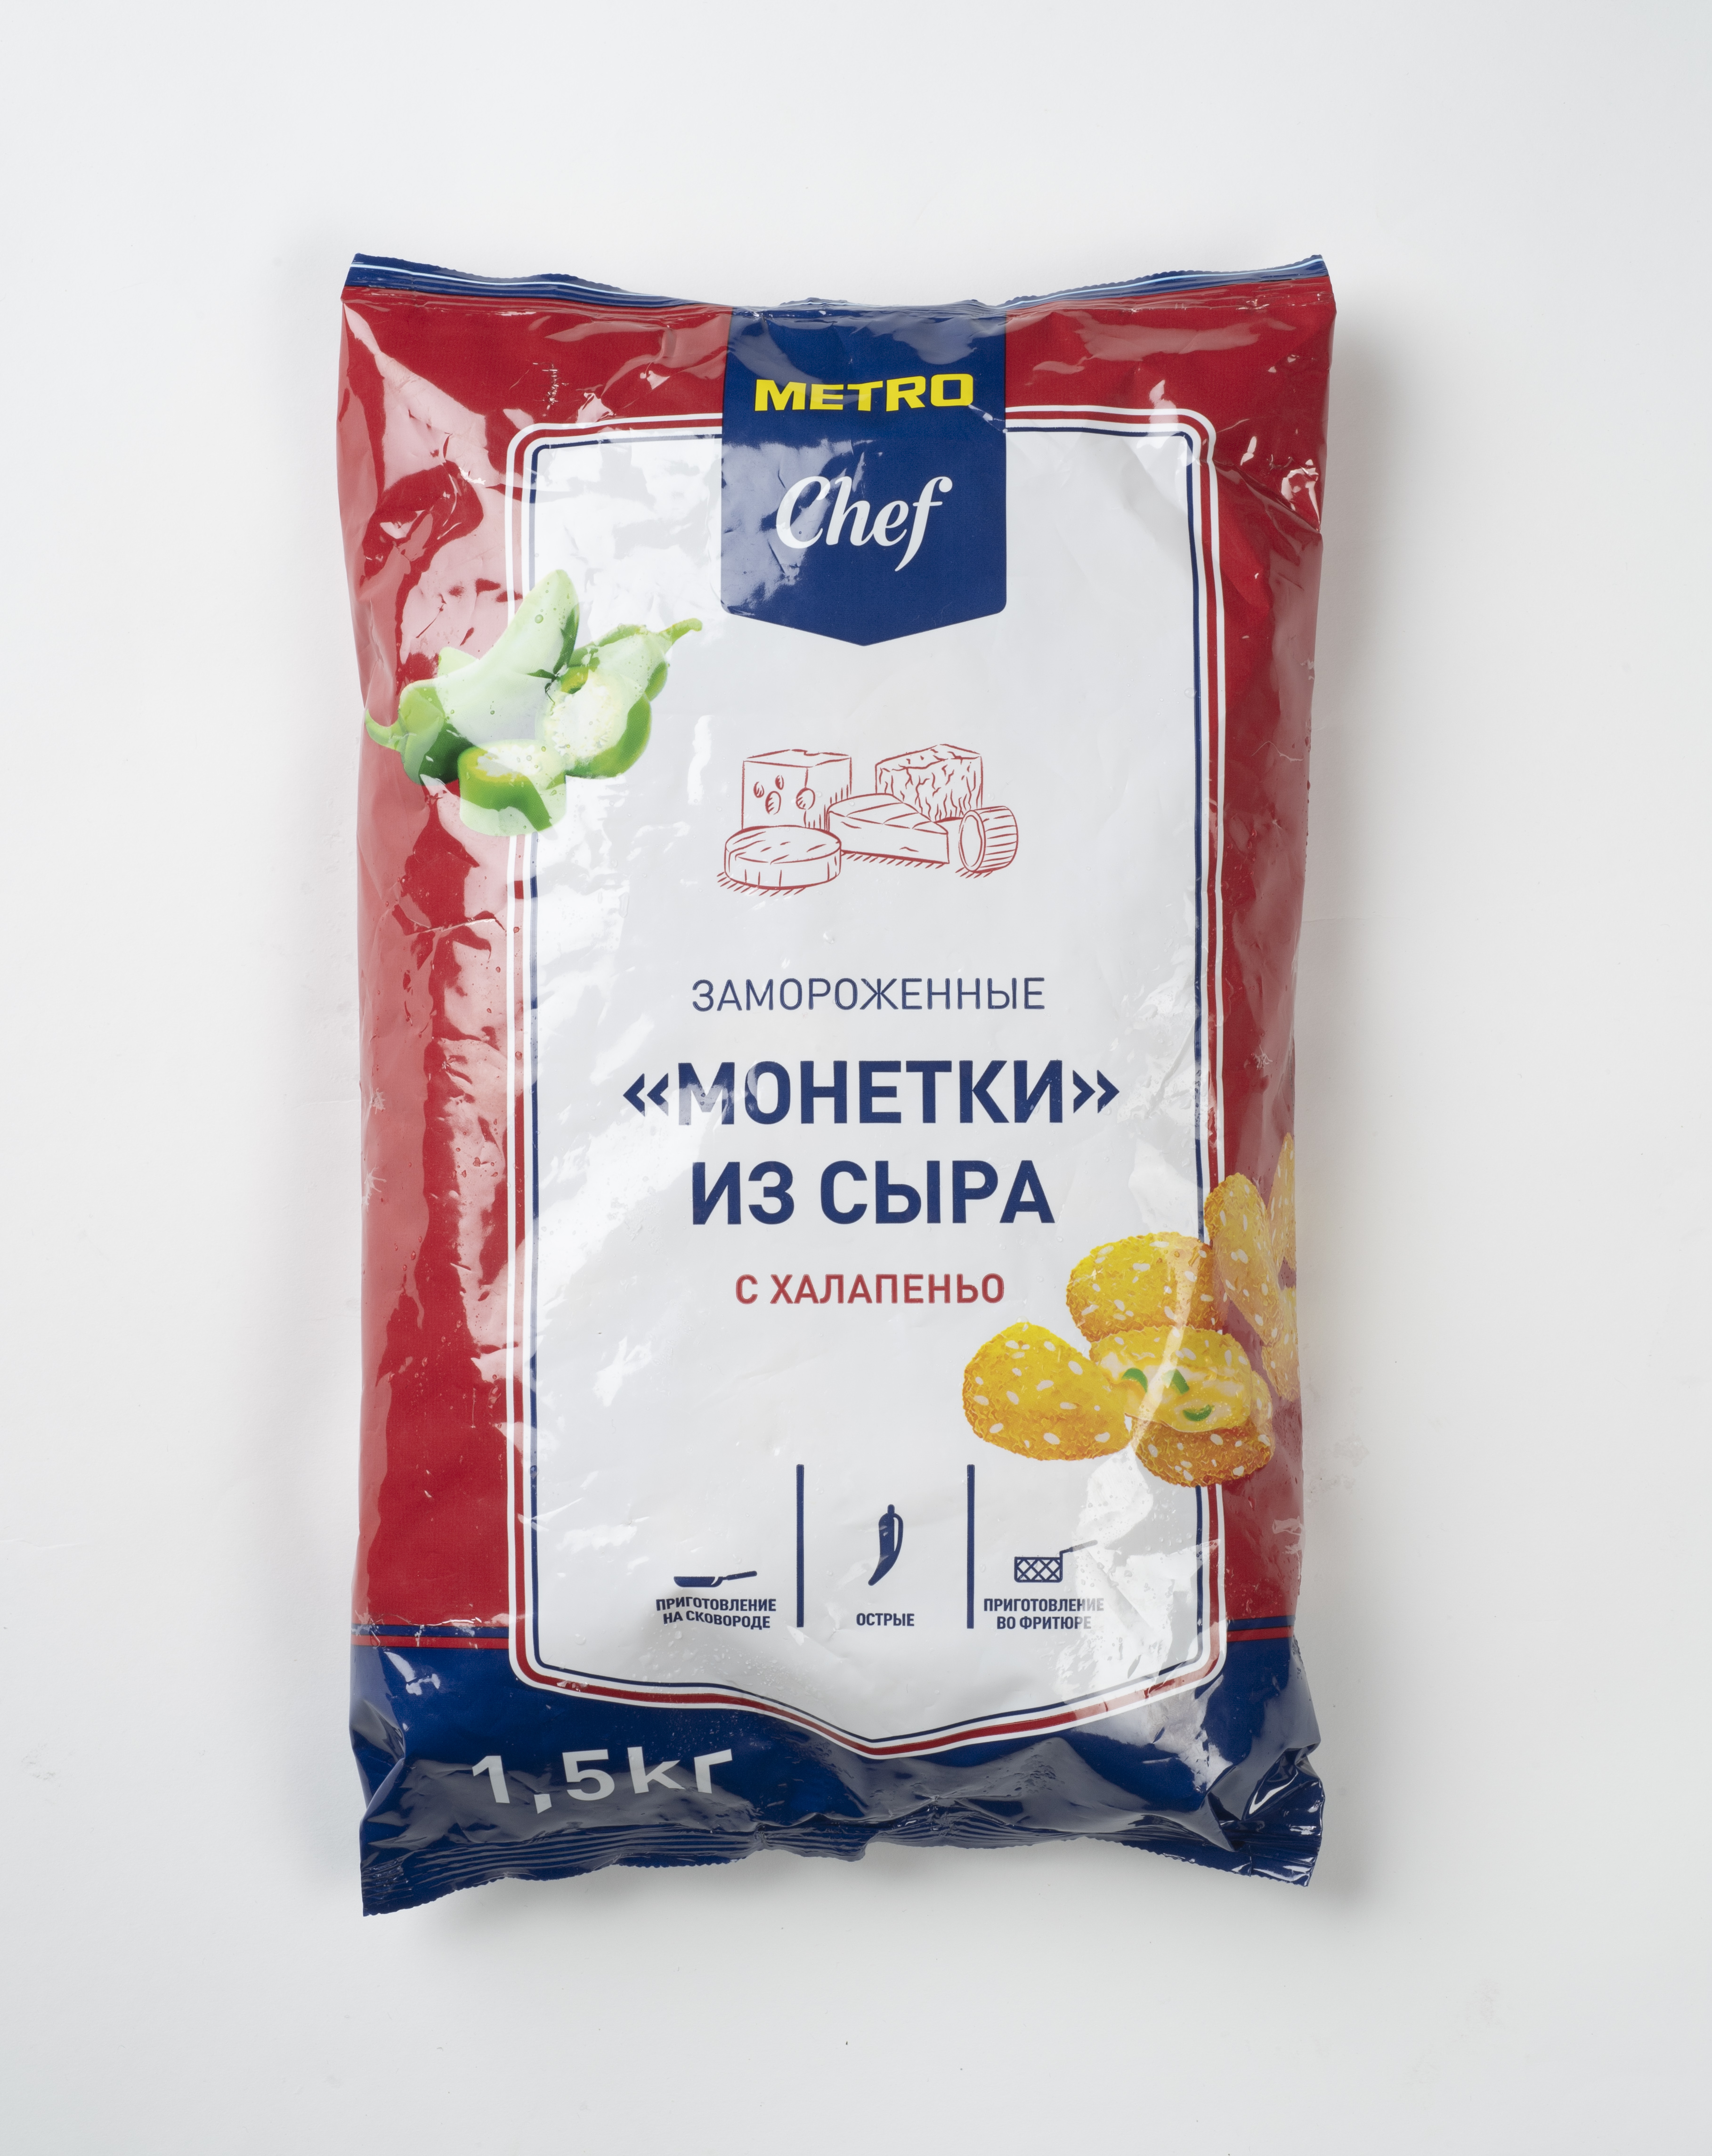 Сырные монетки Metro Chef с халапеньо замороженные 1,5 кг